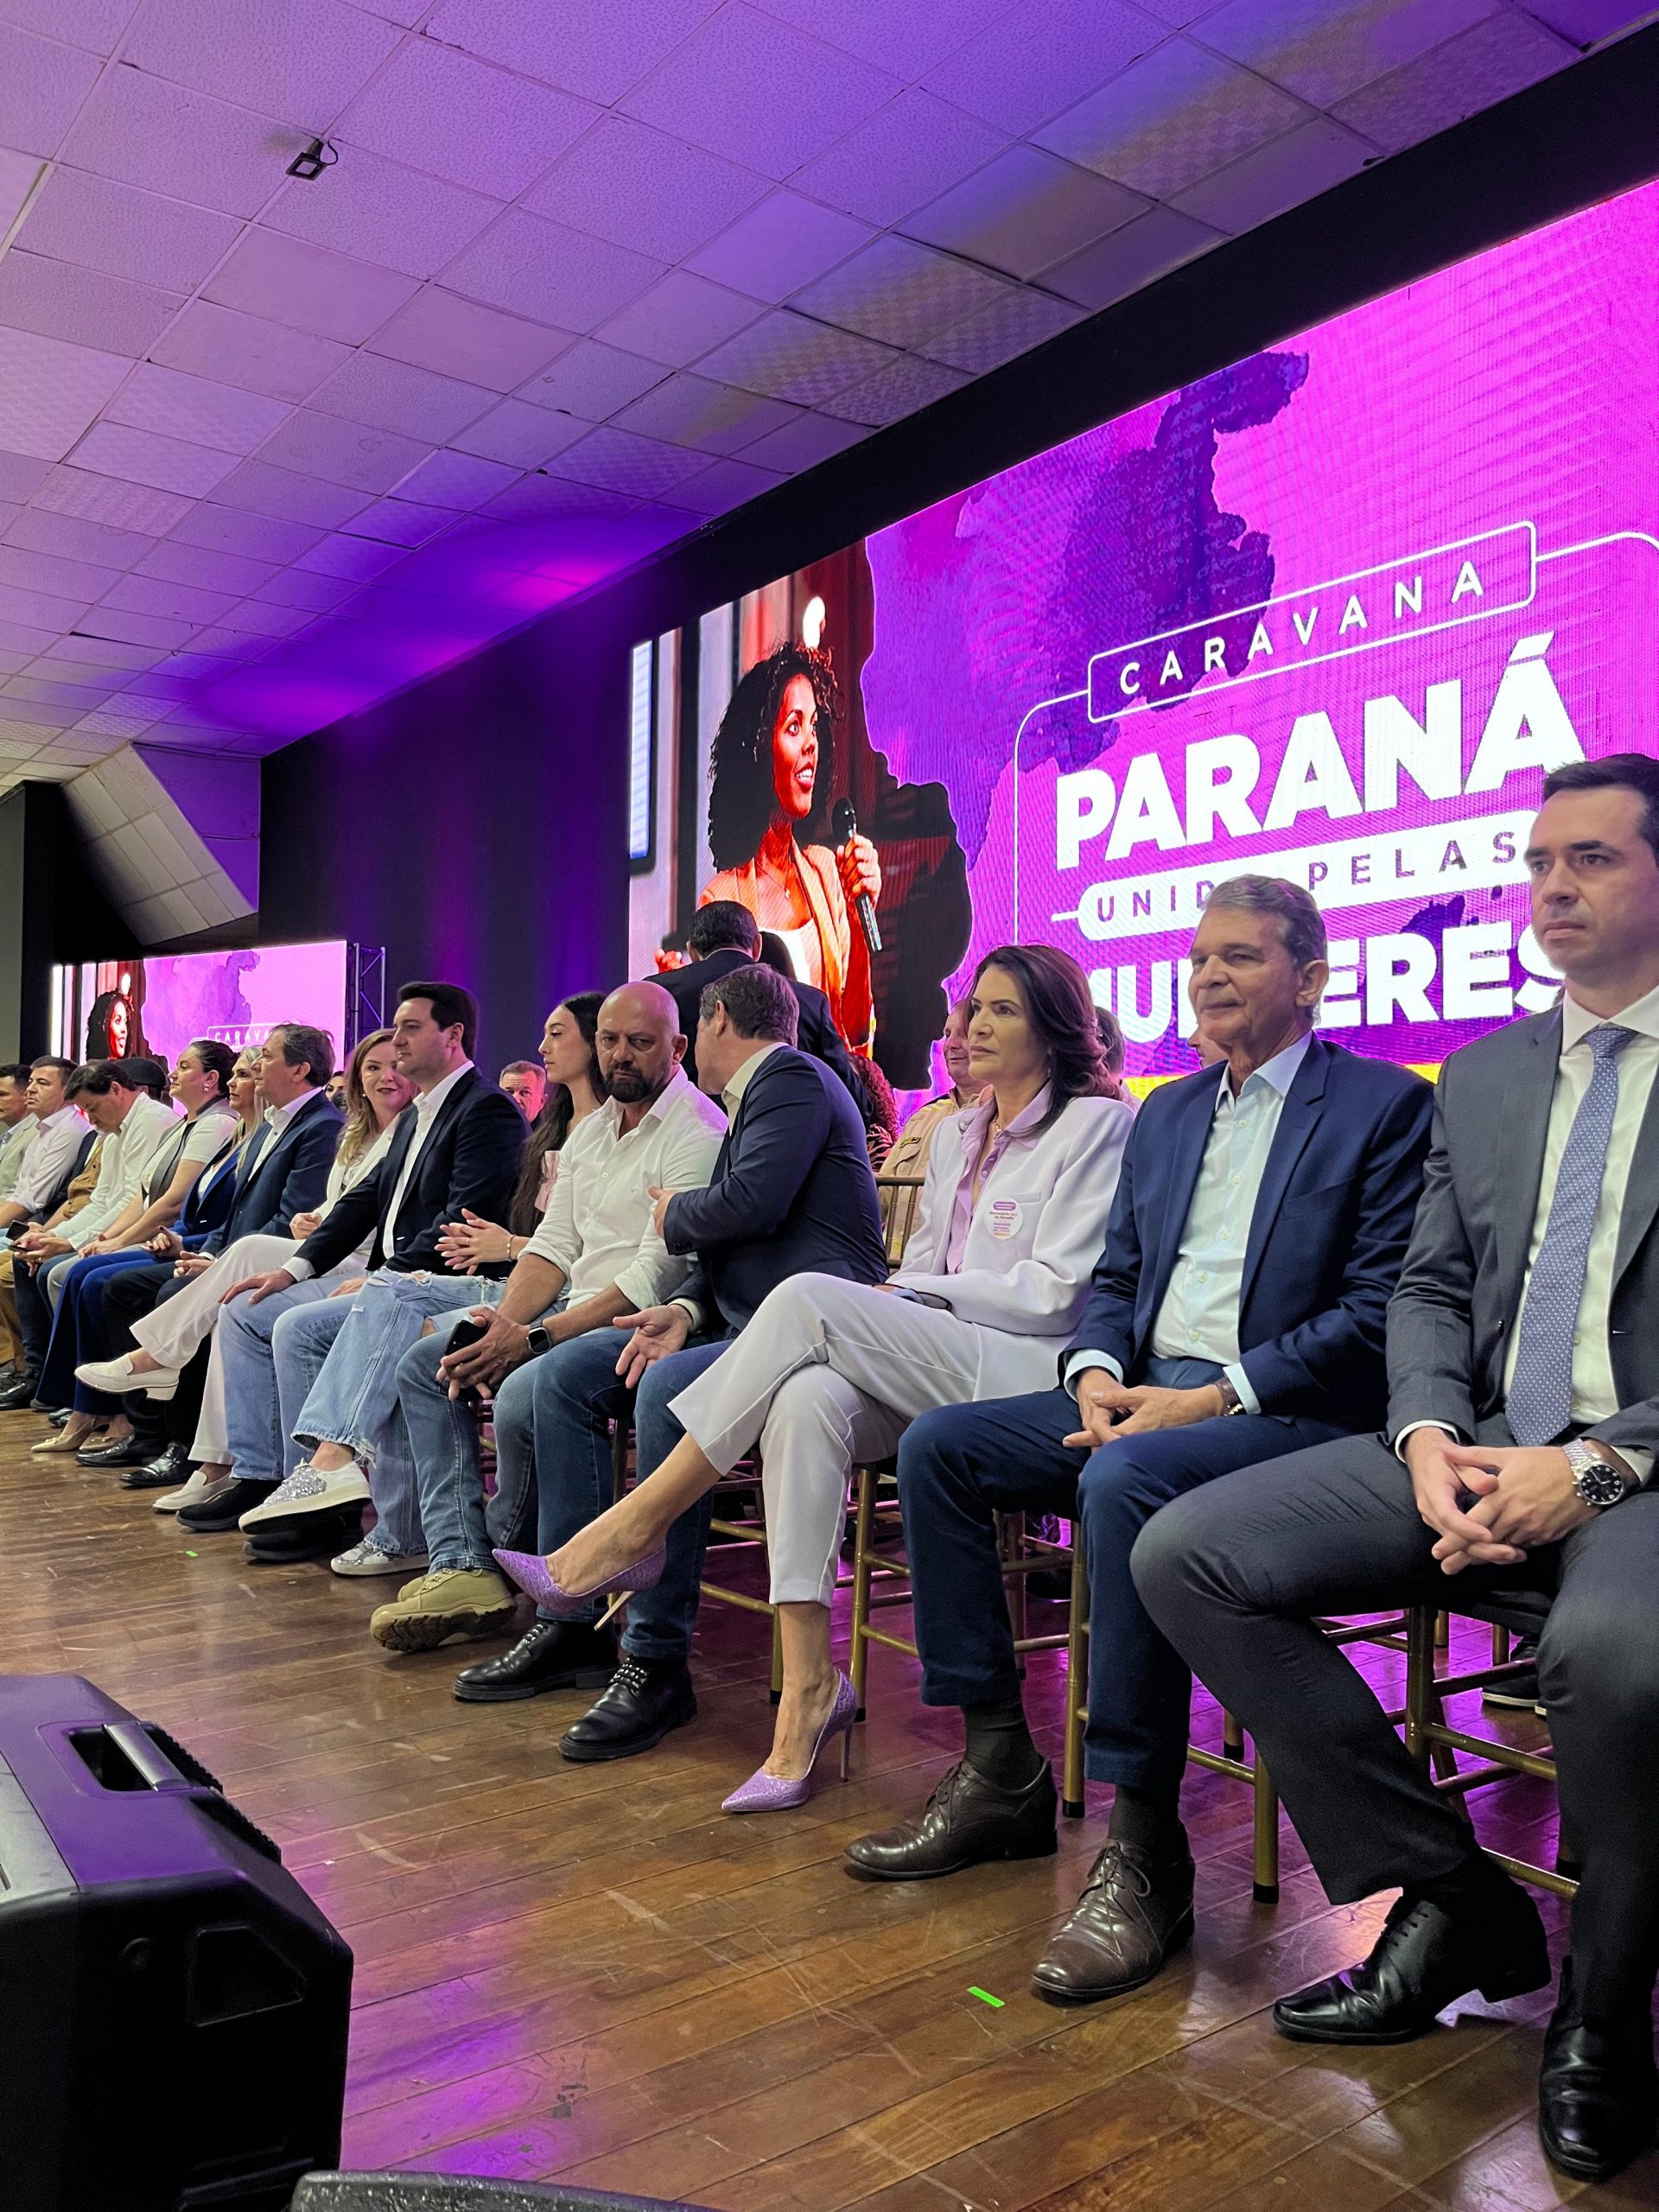 SP Mulher participa como convidada especial em evento no Estado do Paraná